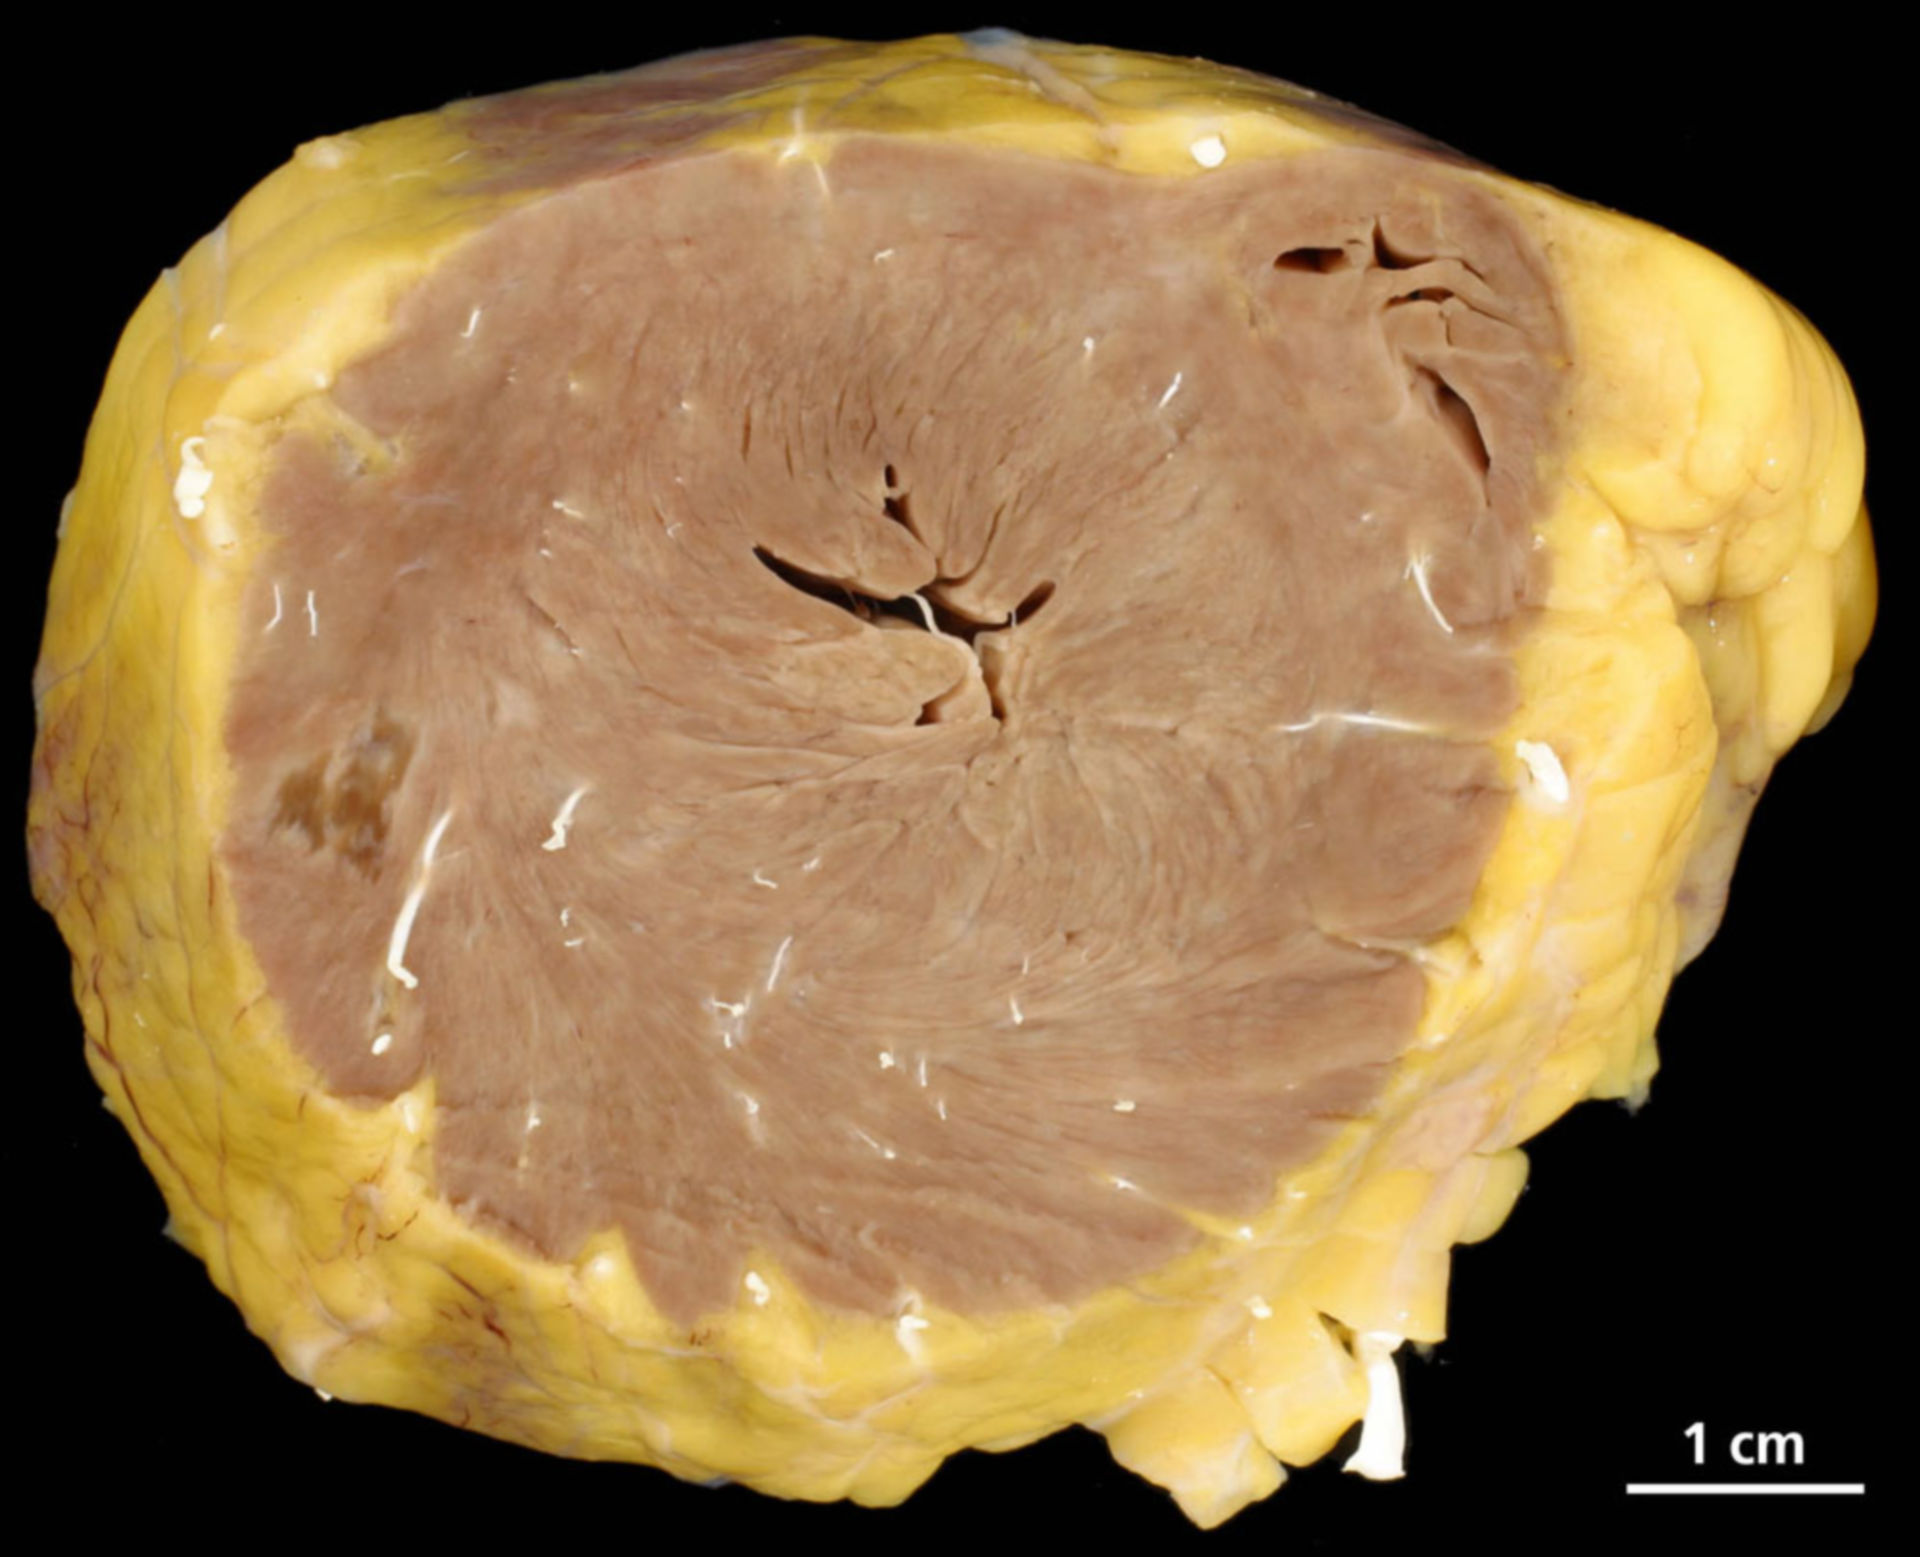 Myocardial hypertrophy, subacute necrosis